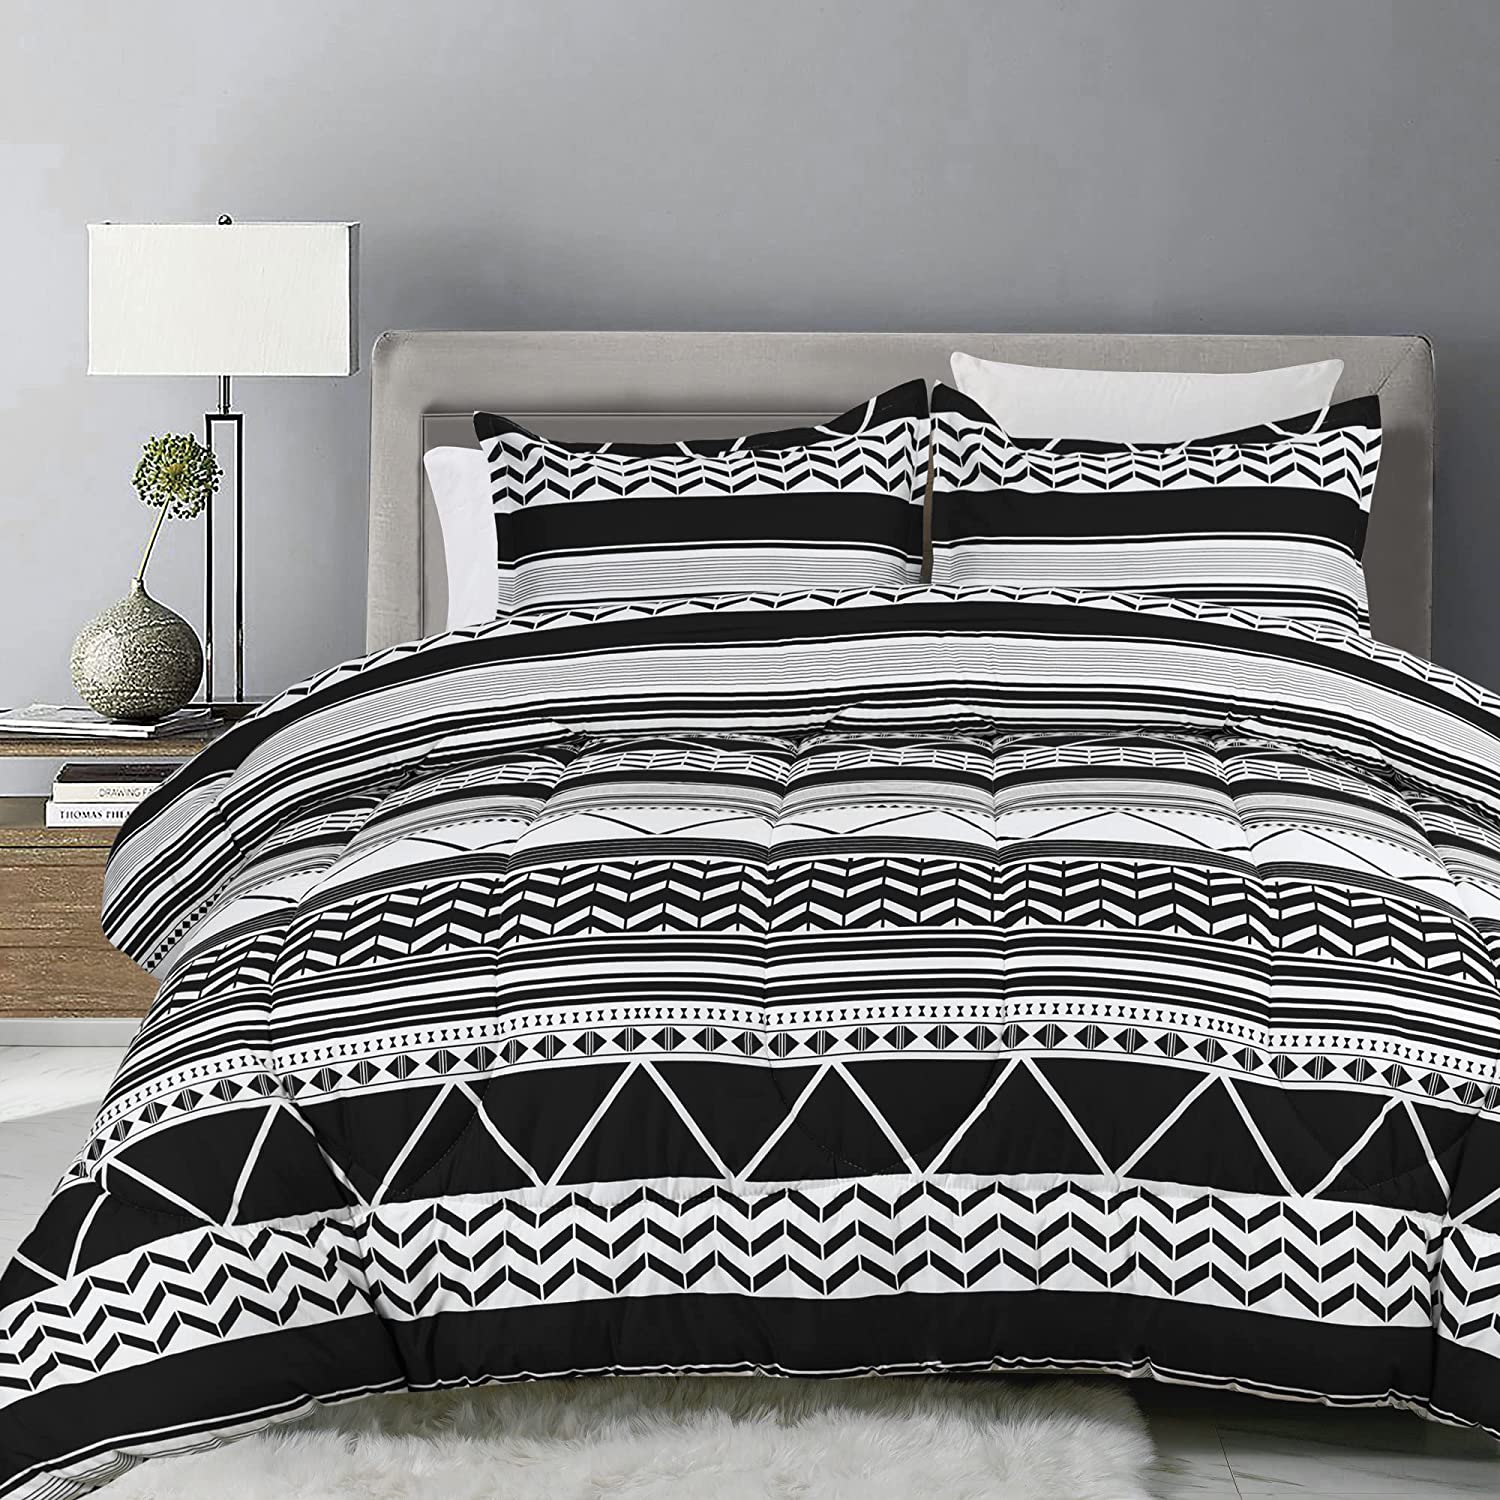 Shatex Bedding-Set 2-Piece Black Queen Comforter Set in the Bedding ...